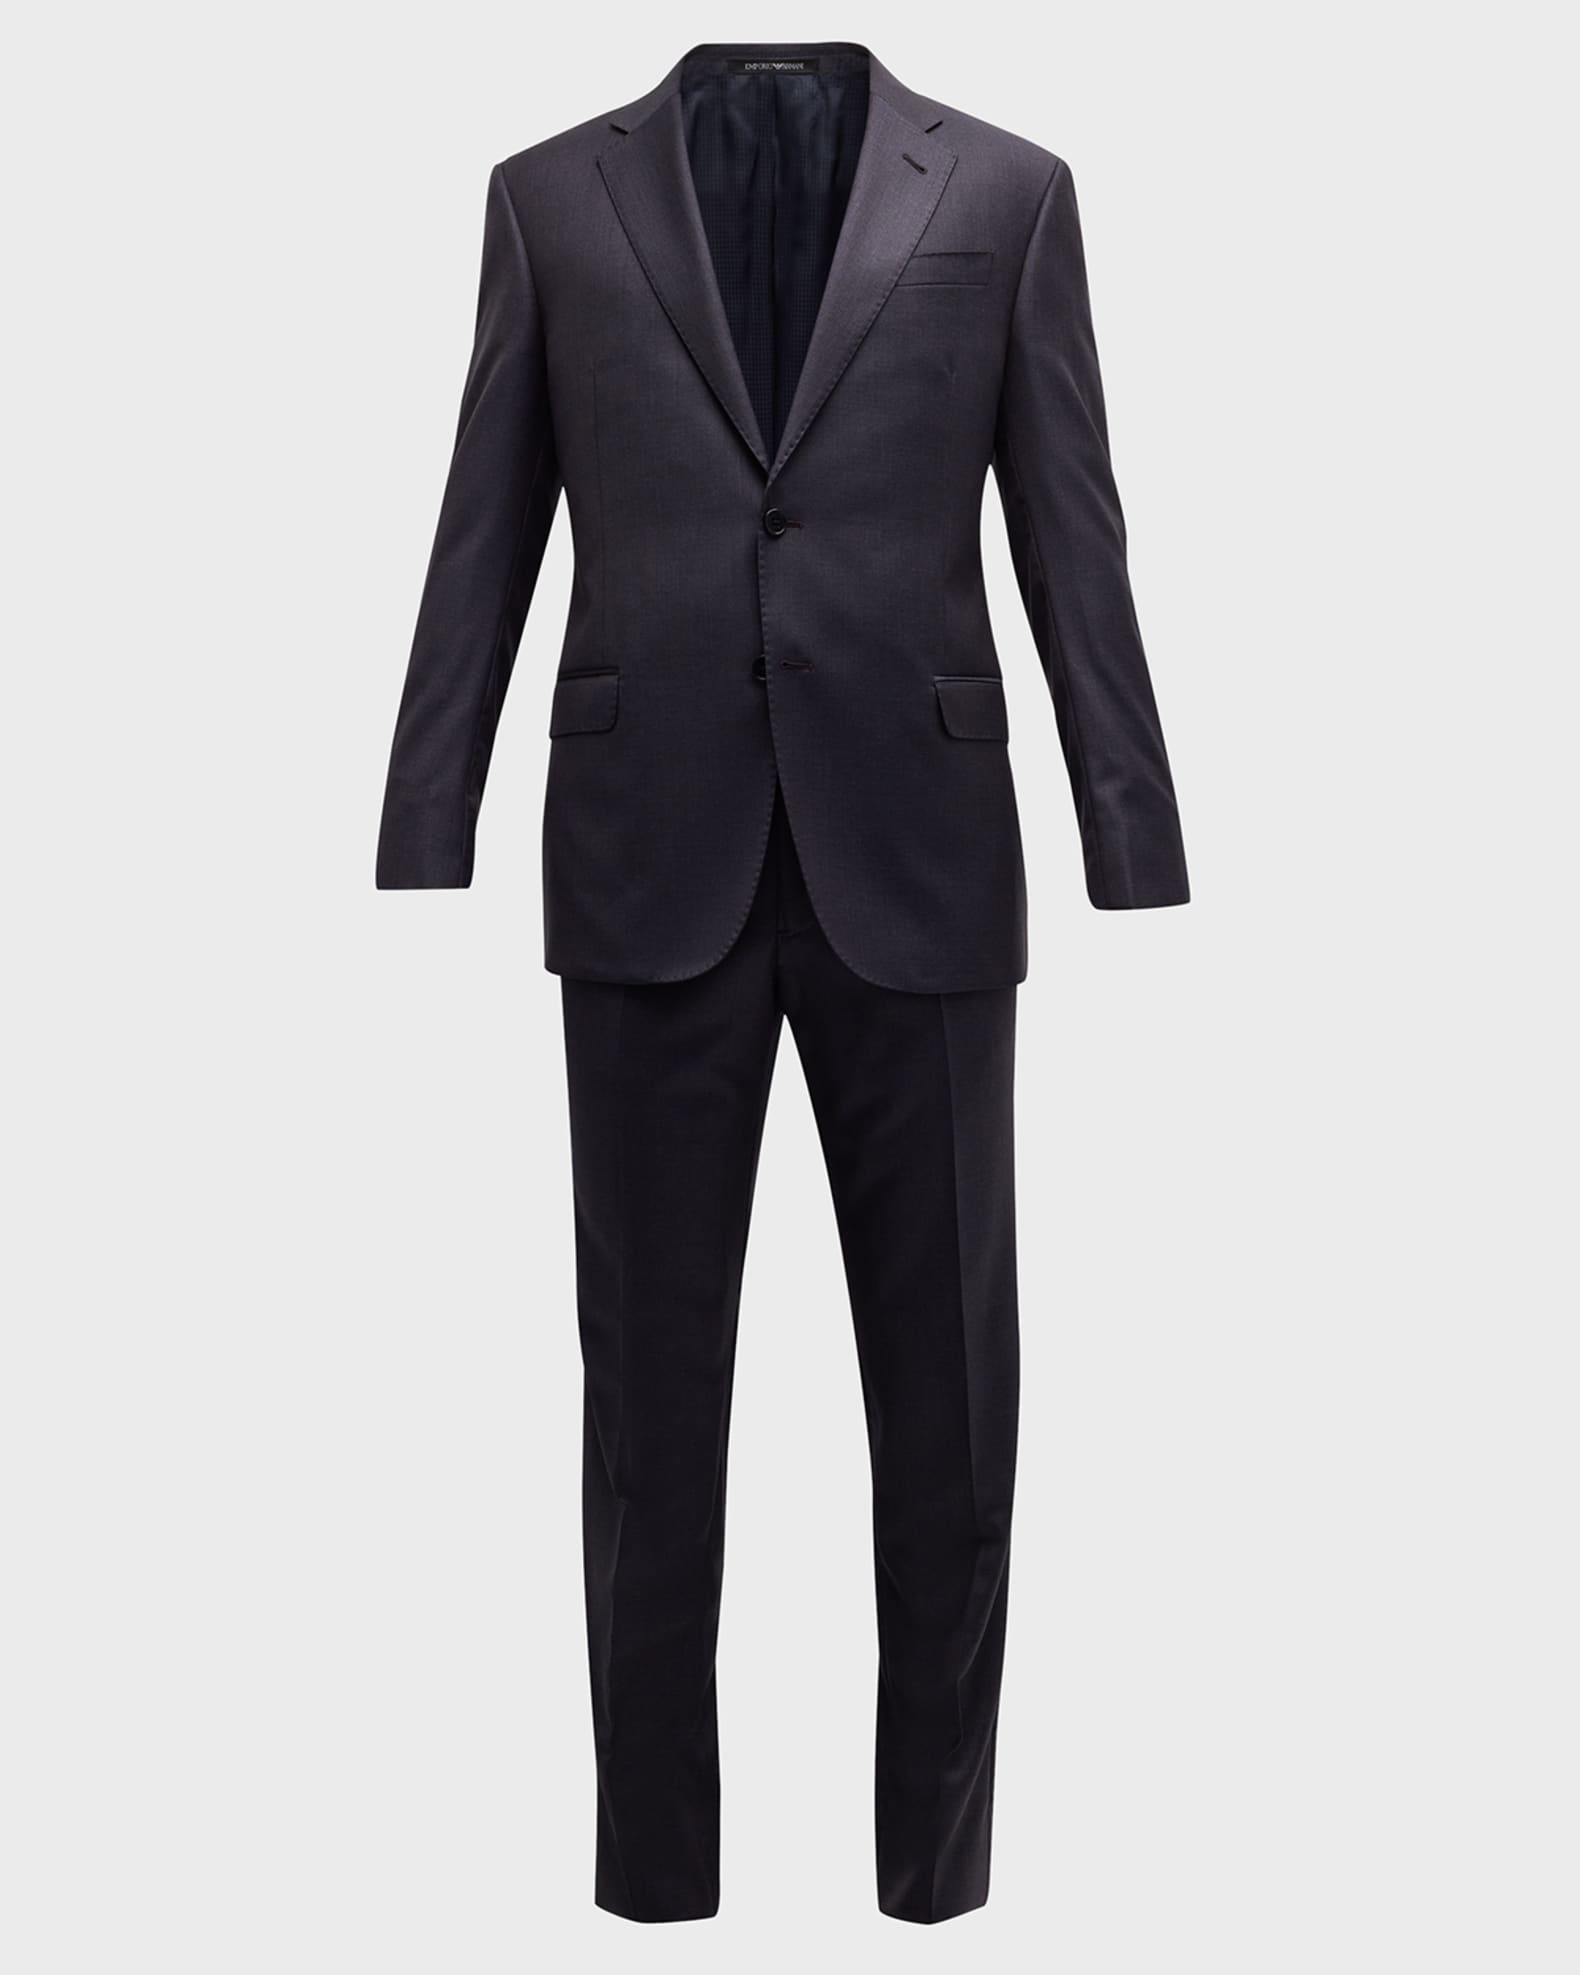 Emporio Armani Men's Tonal Micro Deco Suit | Neiman Marcus